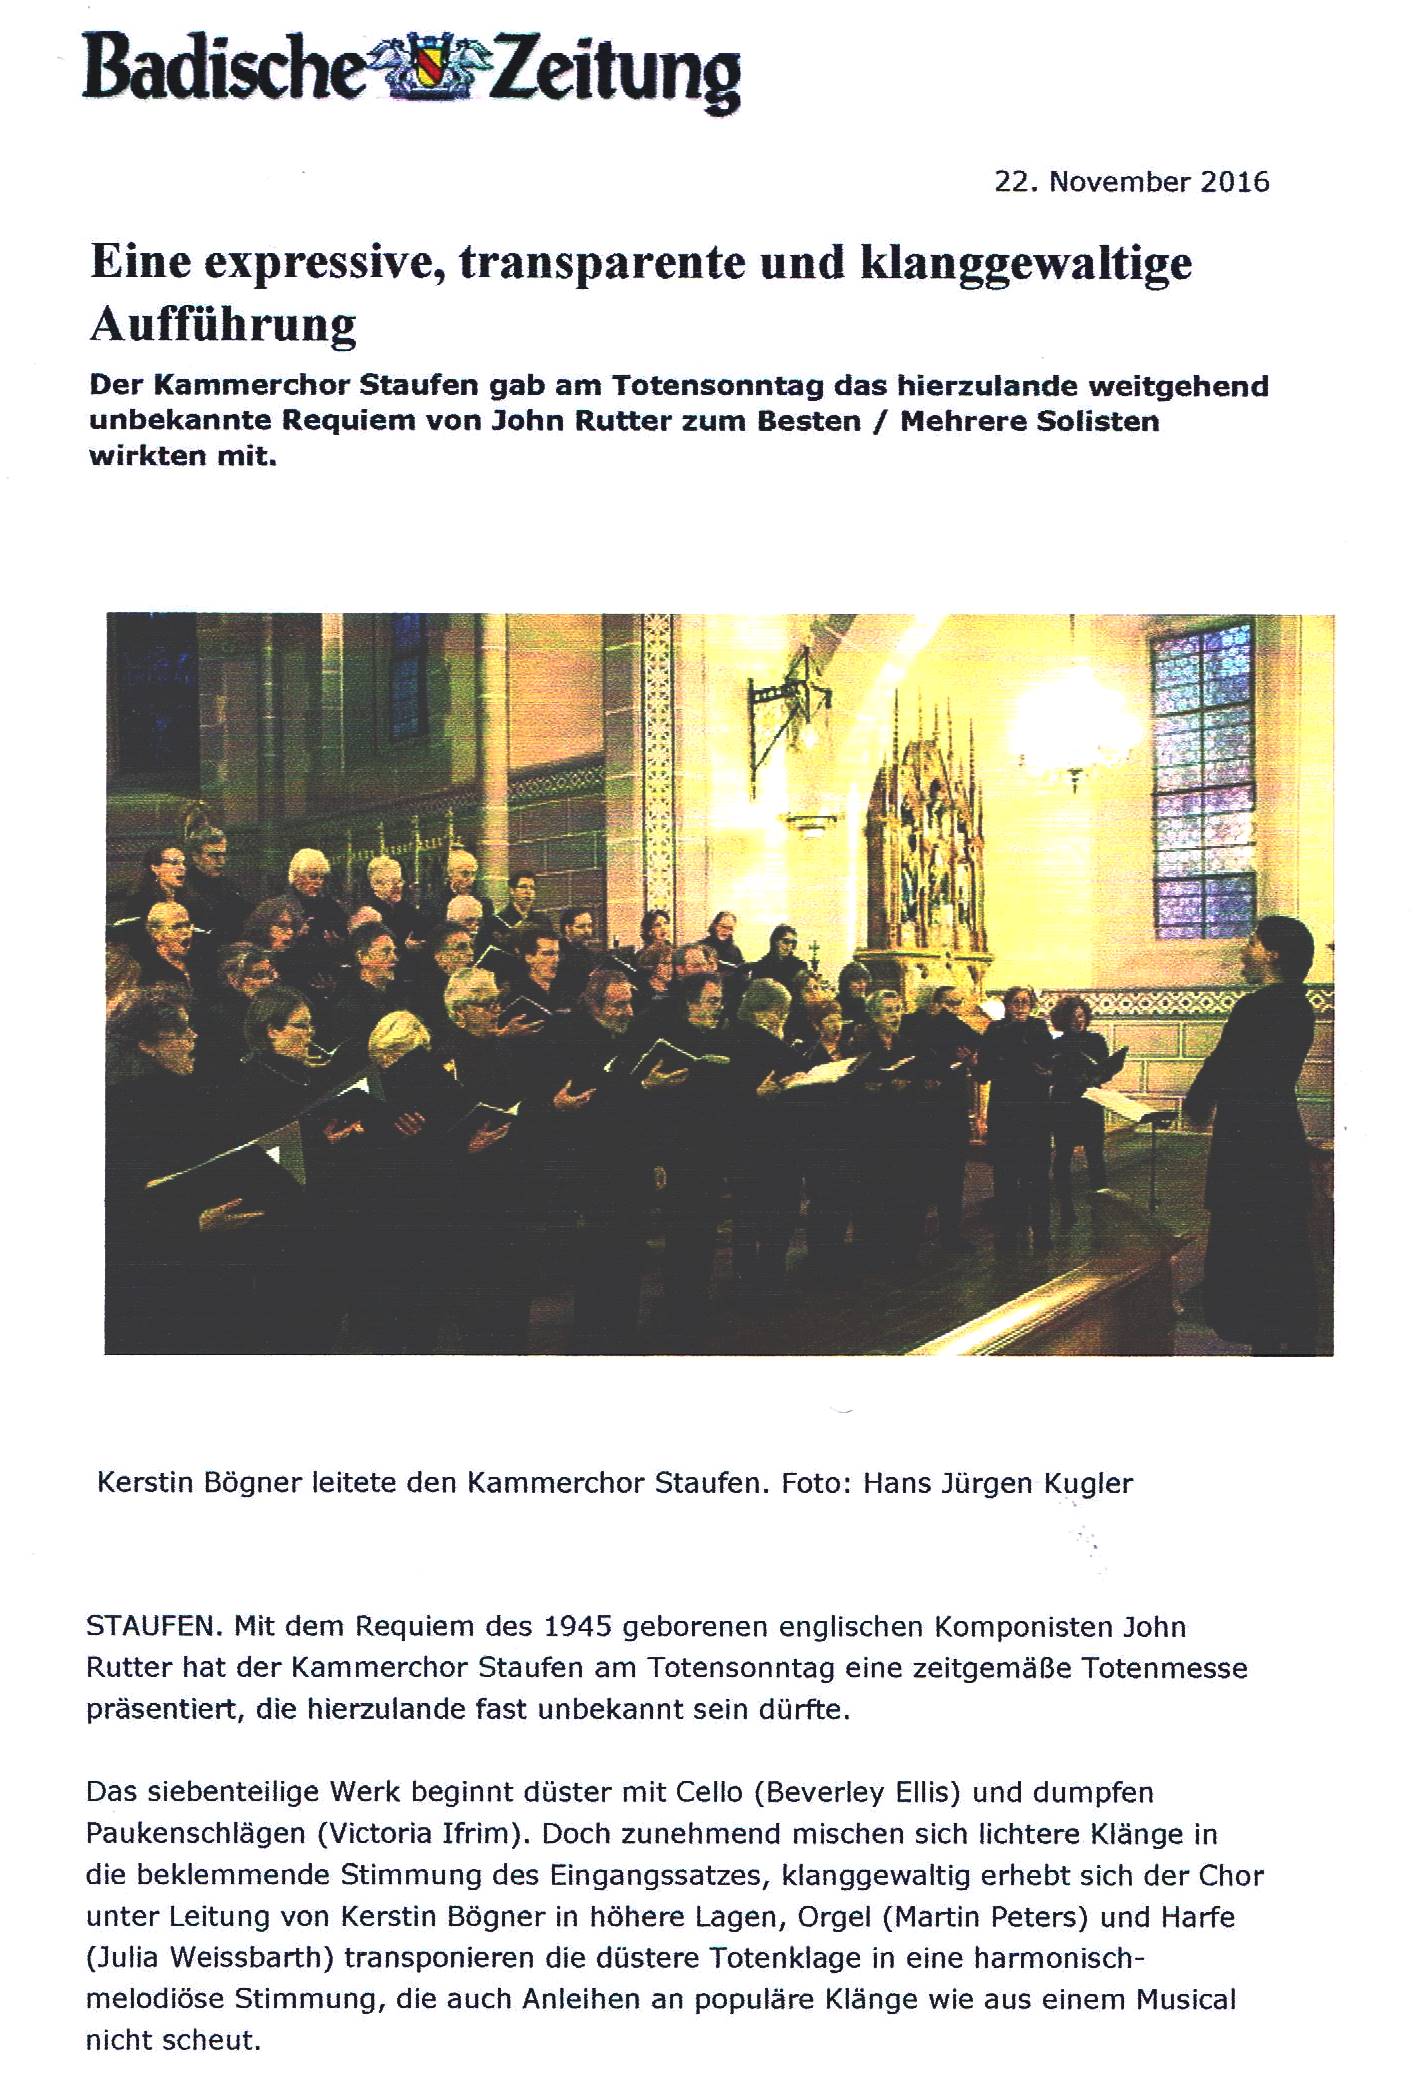 Badische Zeitung, Kammerchor Staufen, Rutter